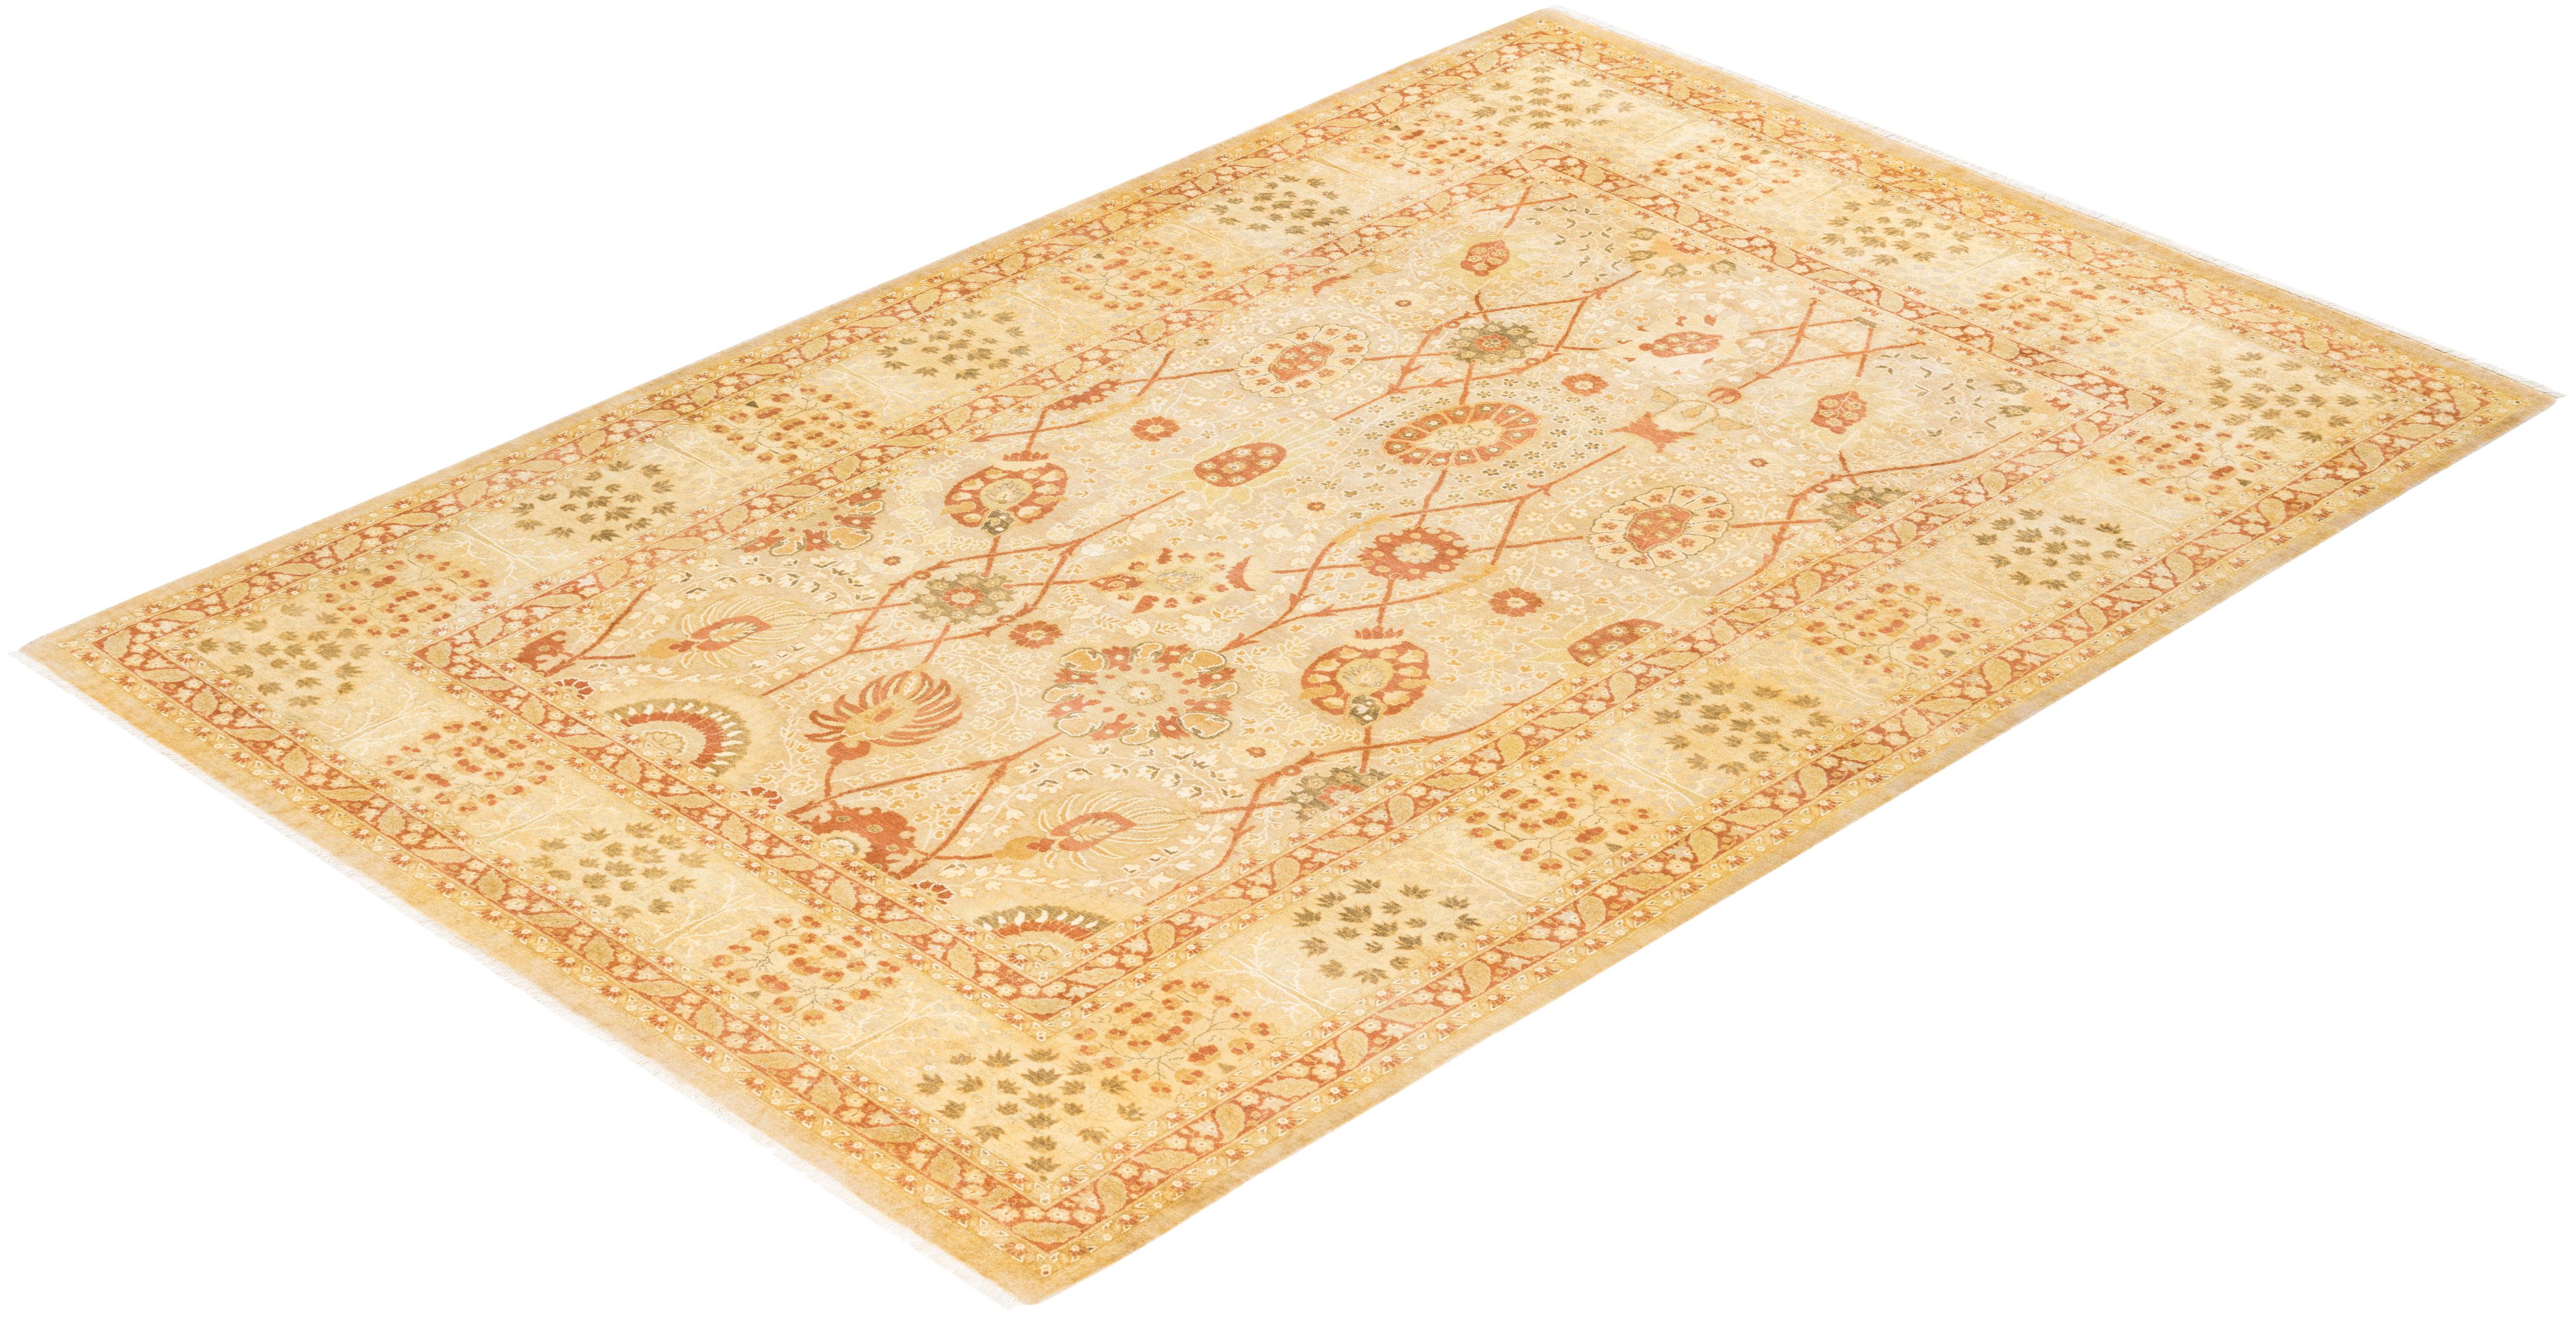 Avec leurs palettes discrètes et leurs motifs allover, les tapis de la collection Mogul apporteront une sophistication intemporelle à n'importe quelle pièce. Influencés par un éventail de motifs turcs, indiens et persans, les artisans qui tissent à